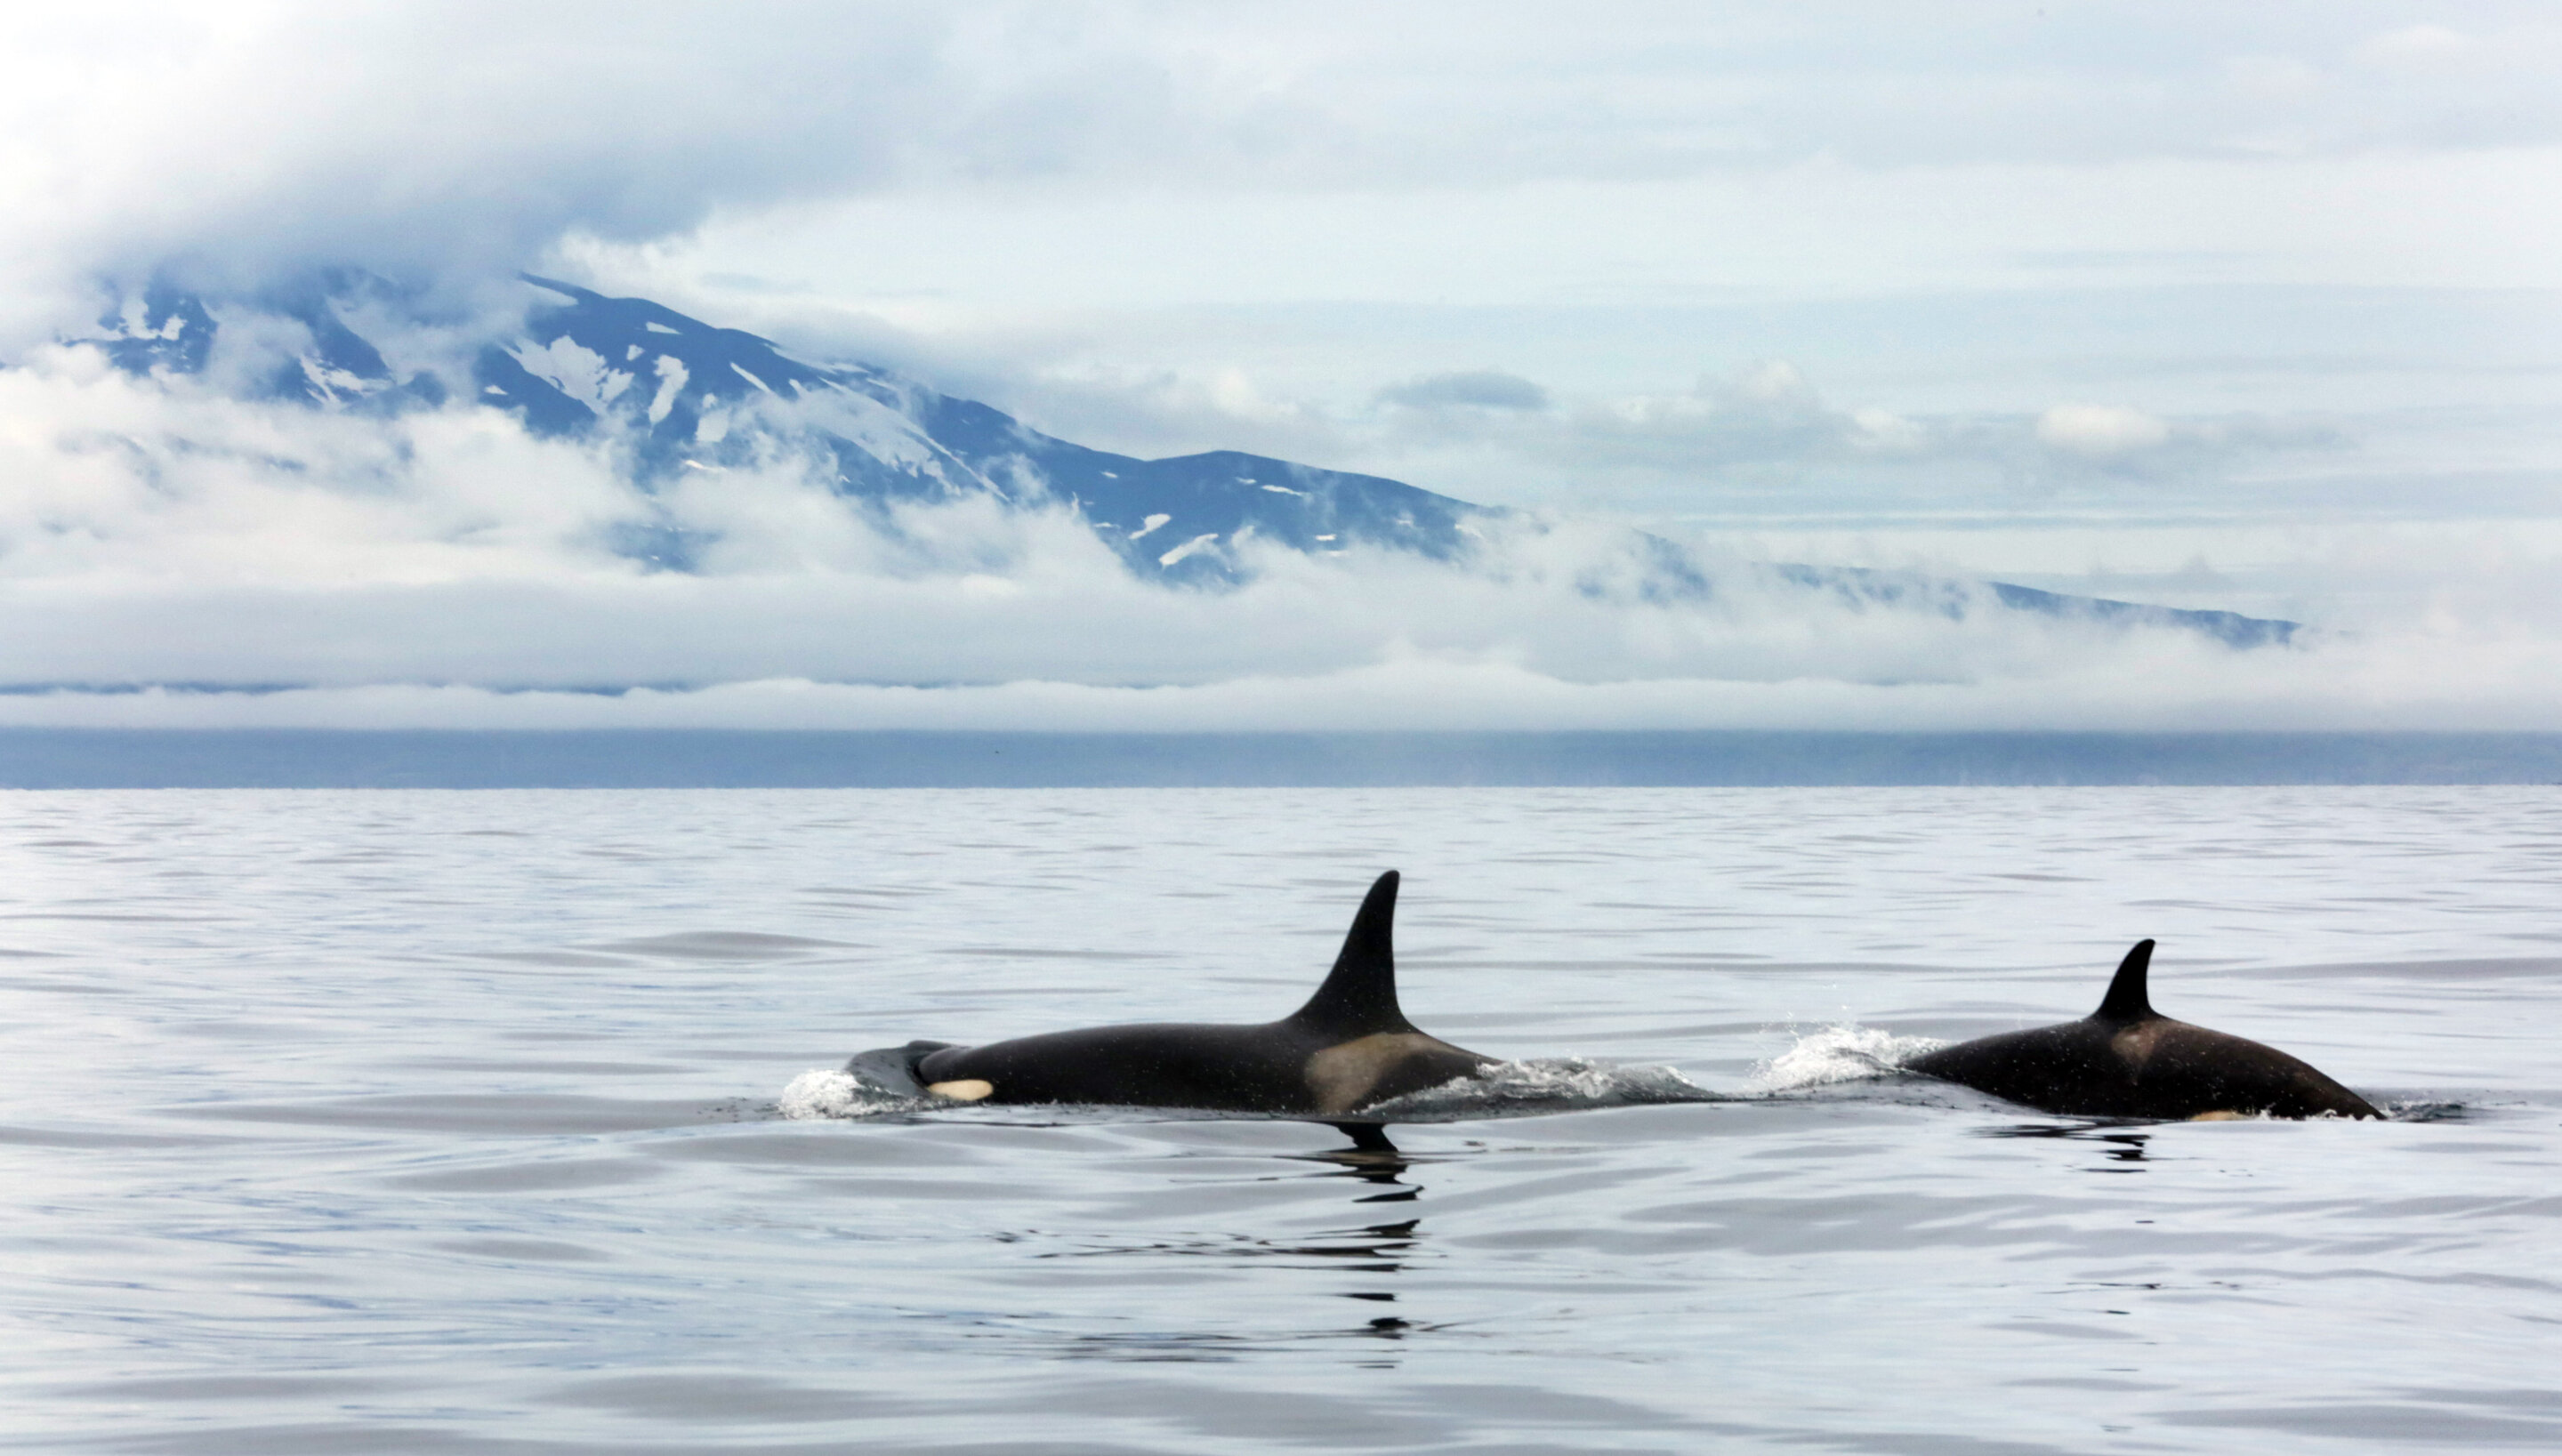 Investigadores han descubierto un refugio para orcas de 20.000 años de antigüedad en el Pacífico Norte